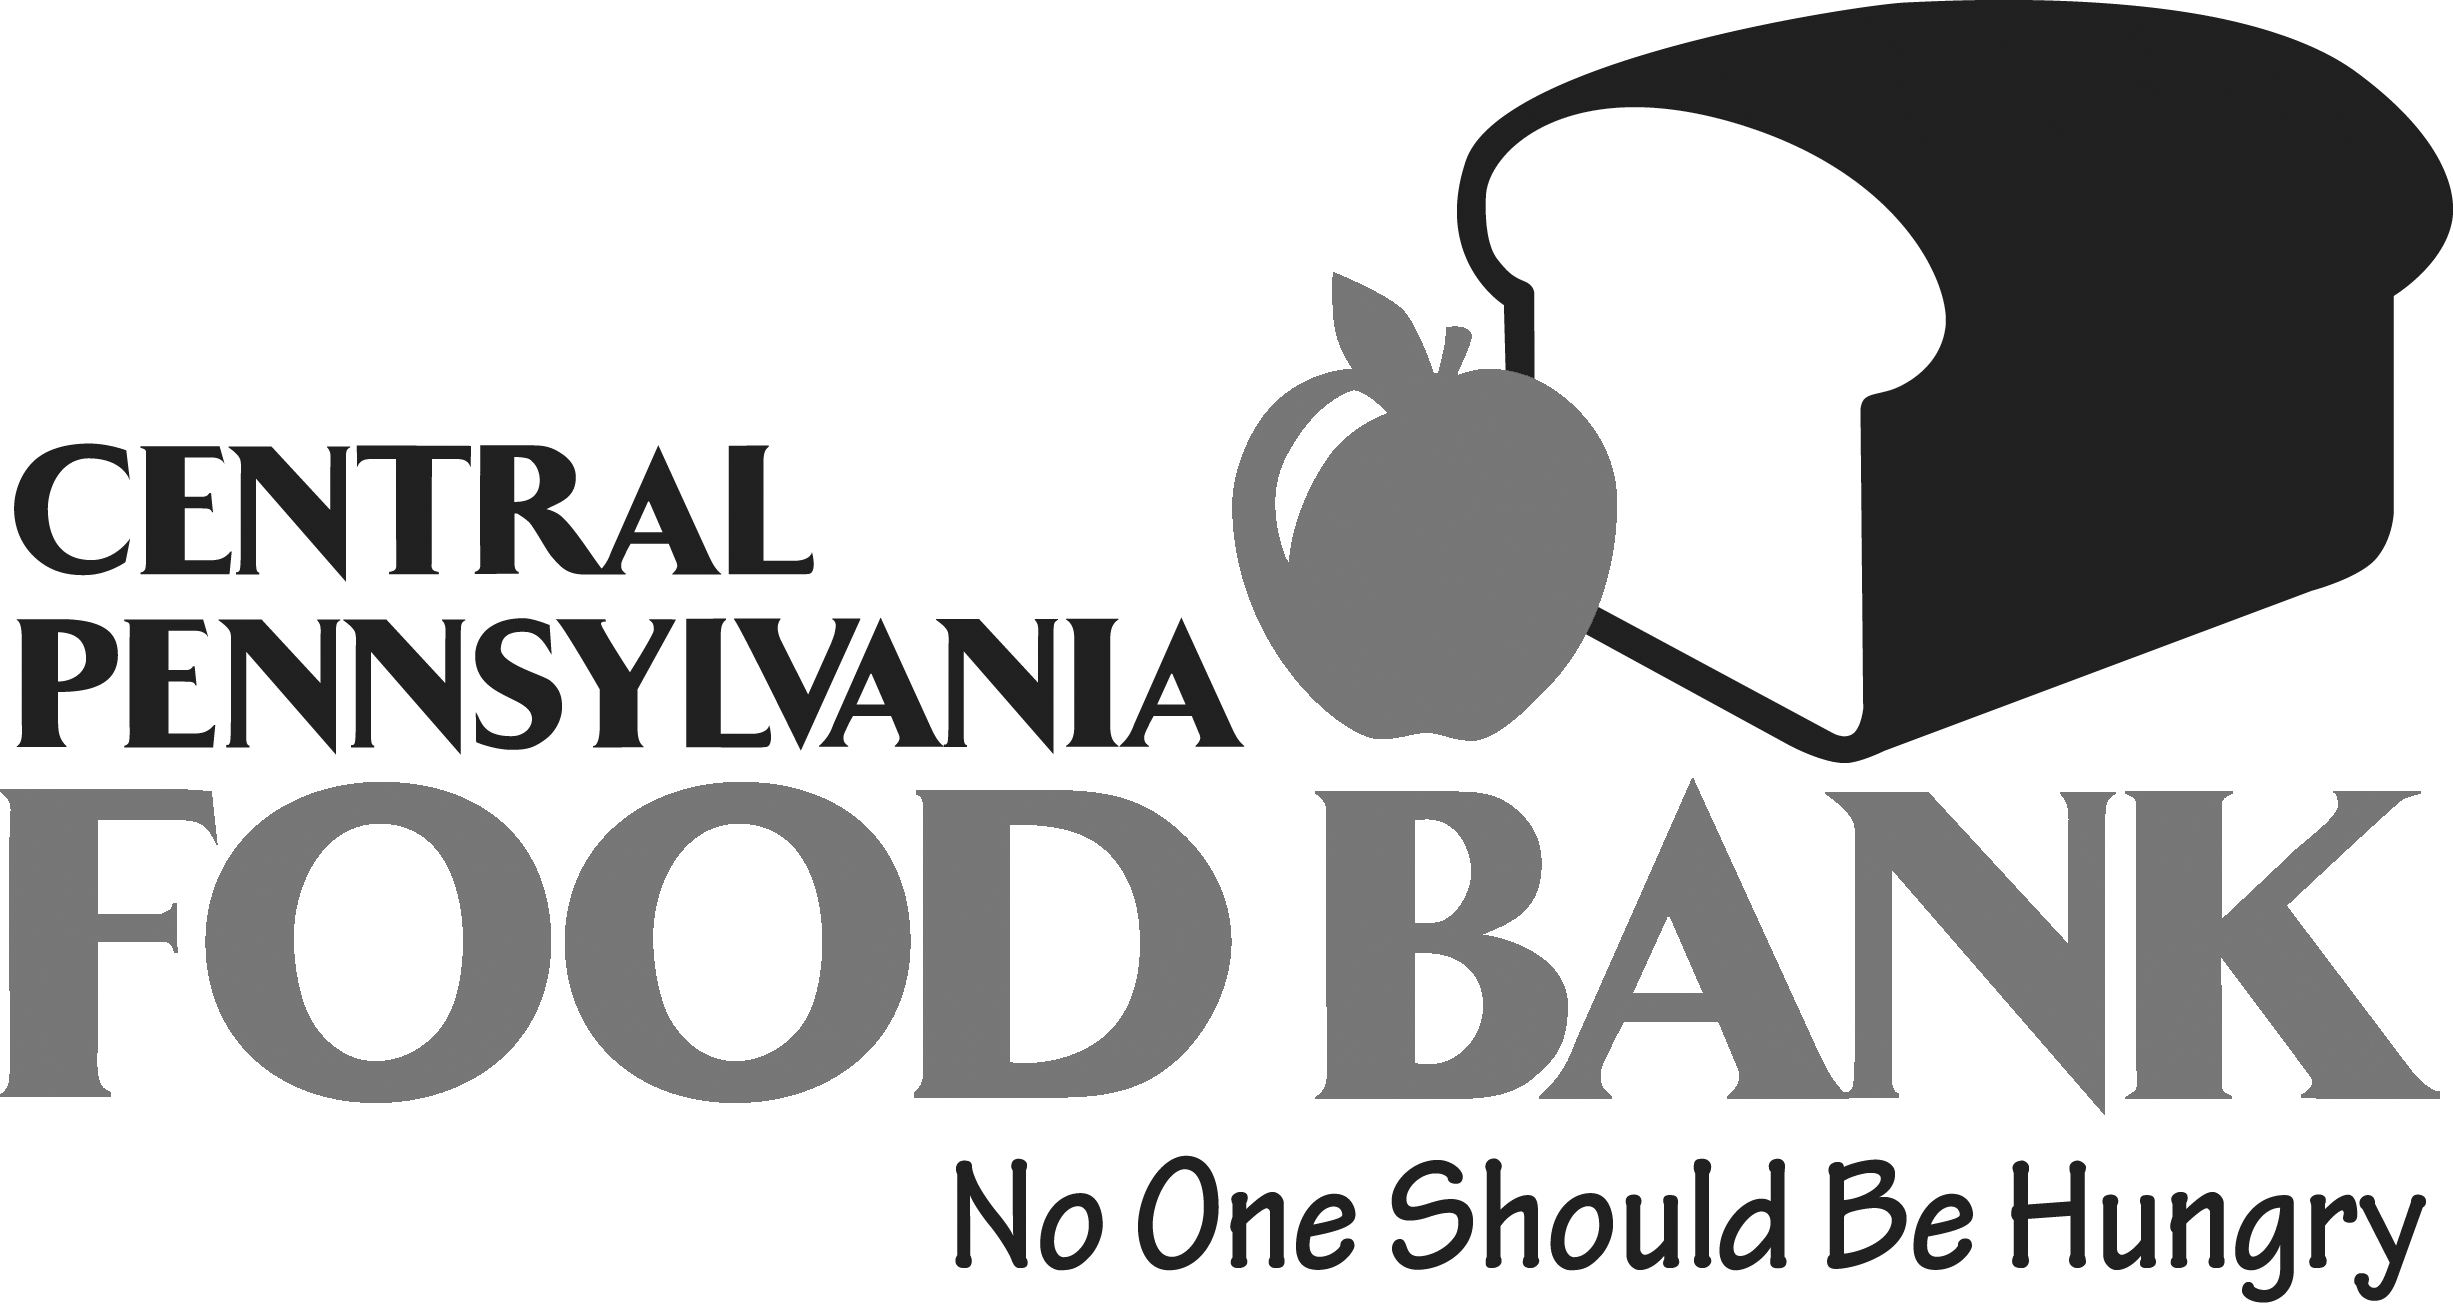 Central Pennsylvania Food Bank logo.